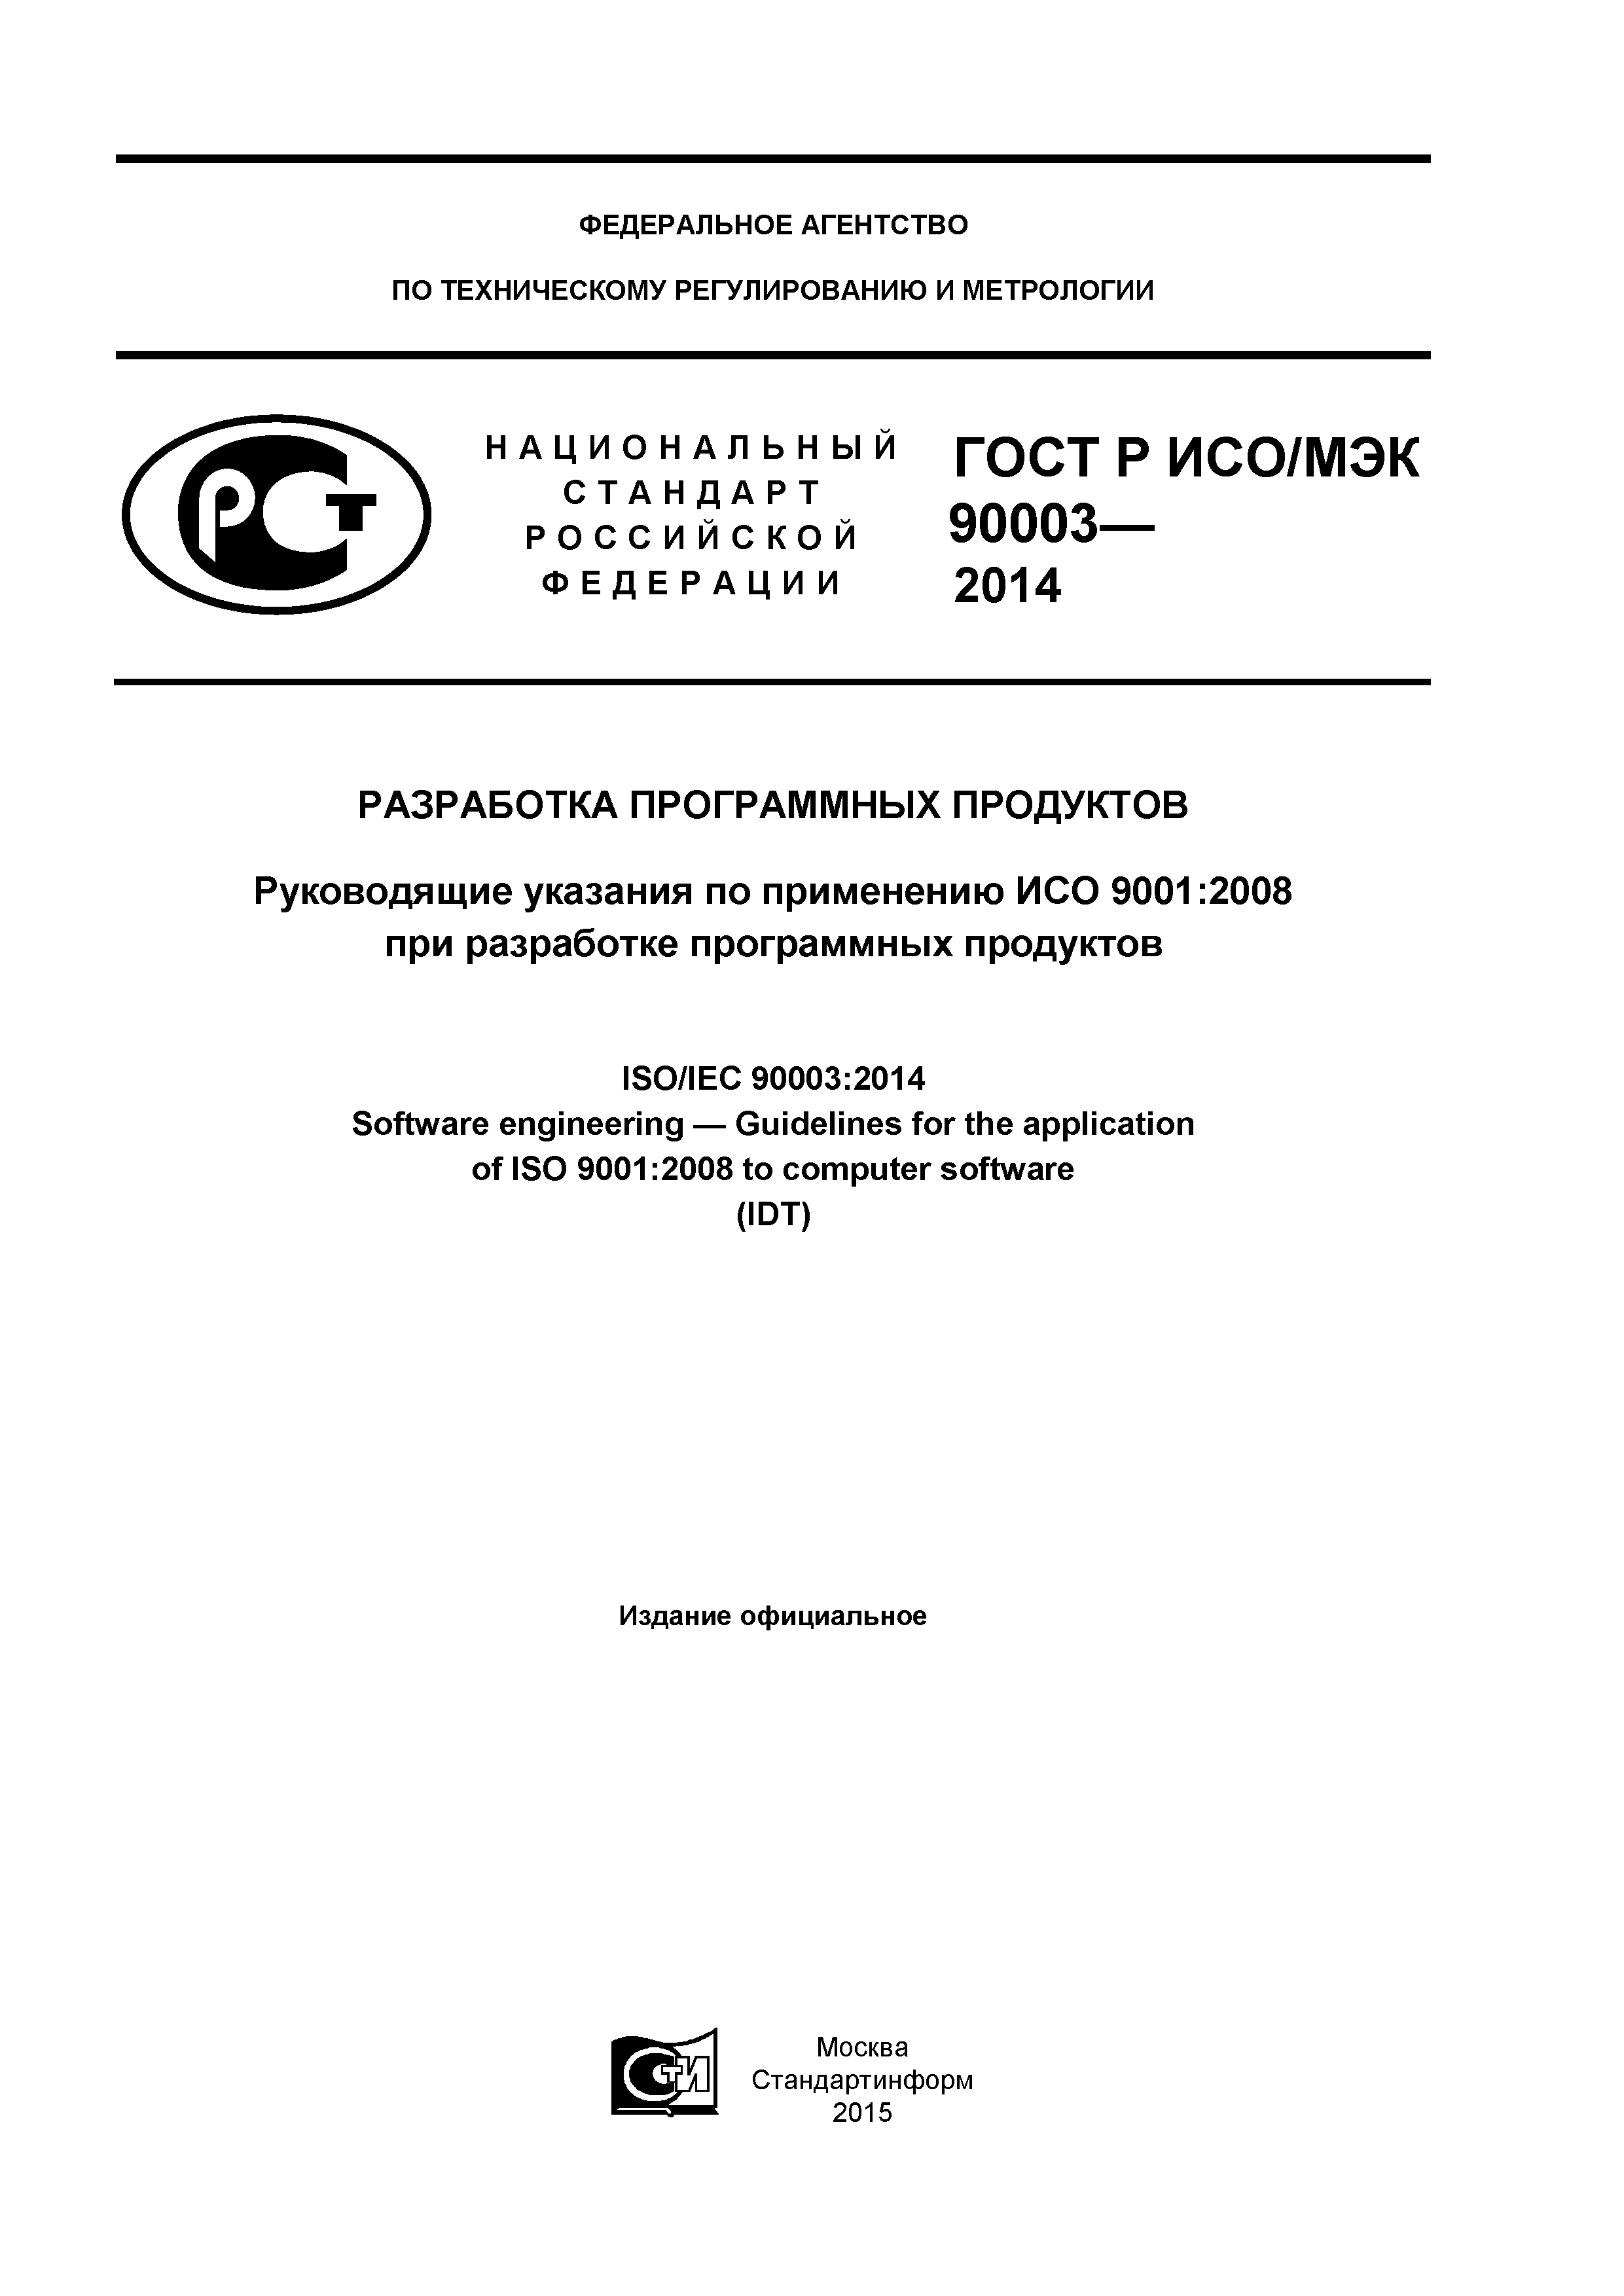 ГОСТ Р ИСО/МЭК 90003-2014